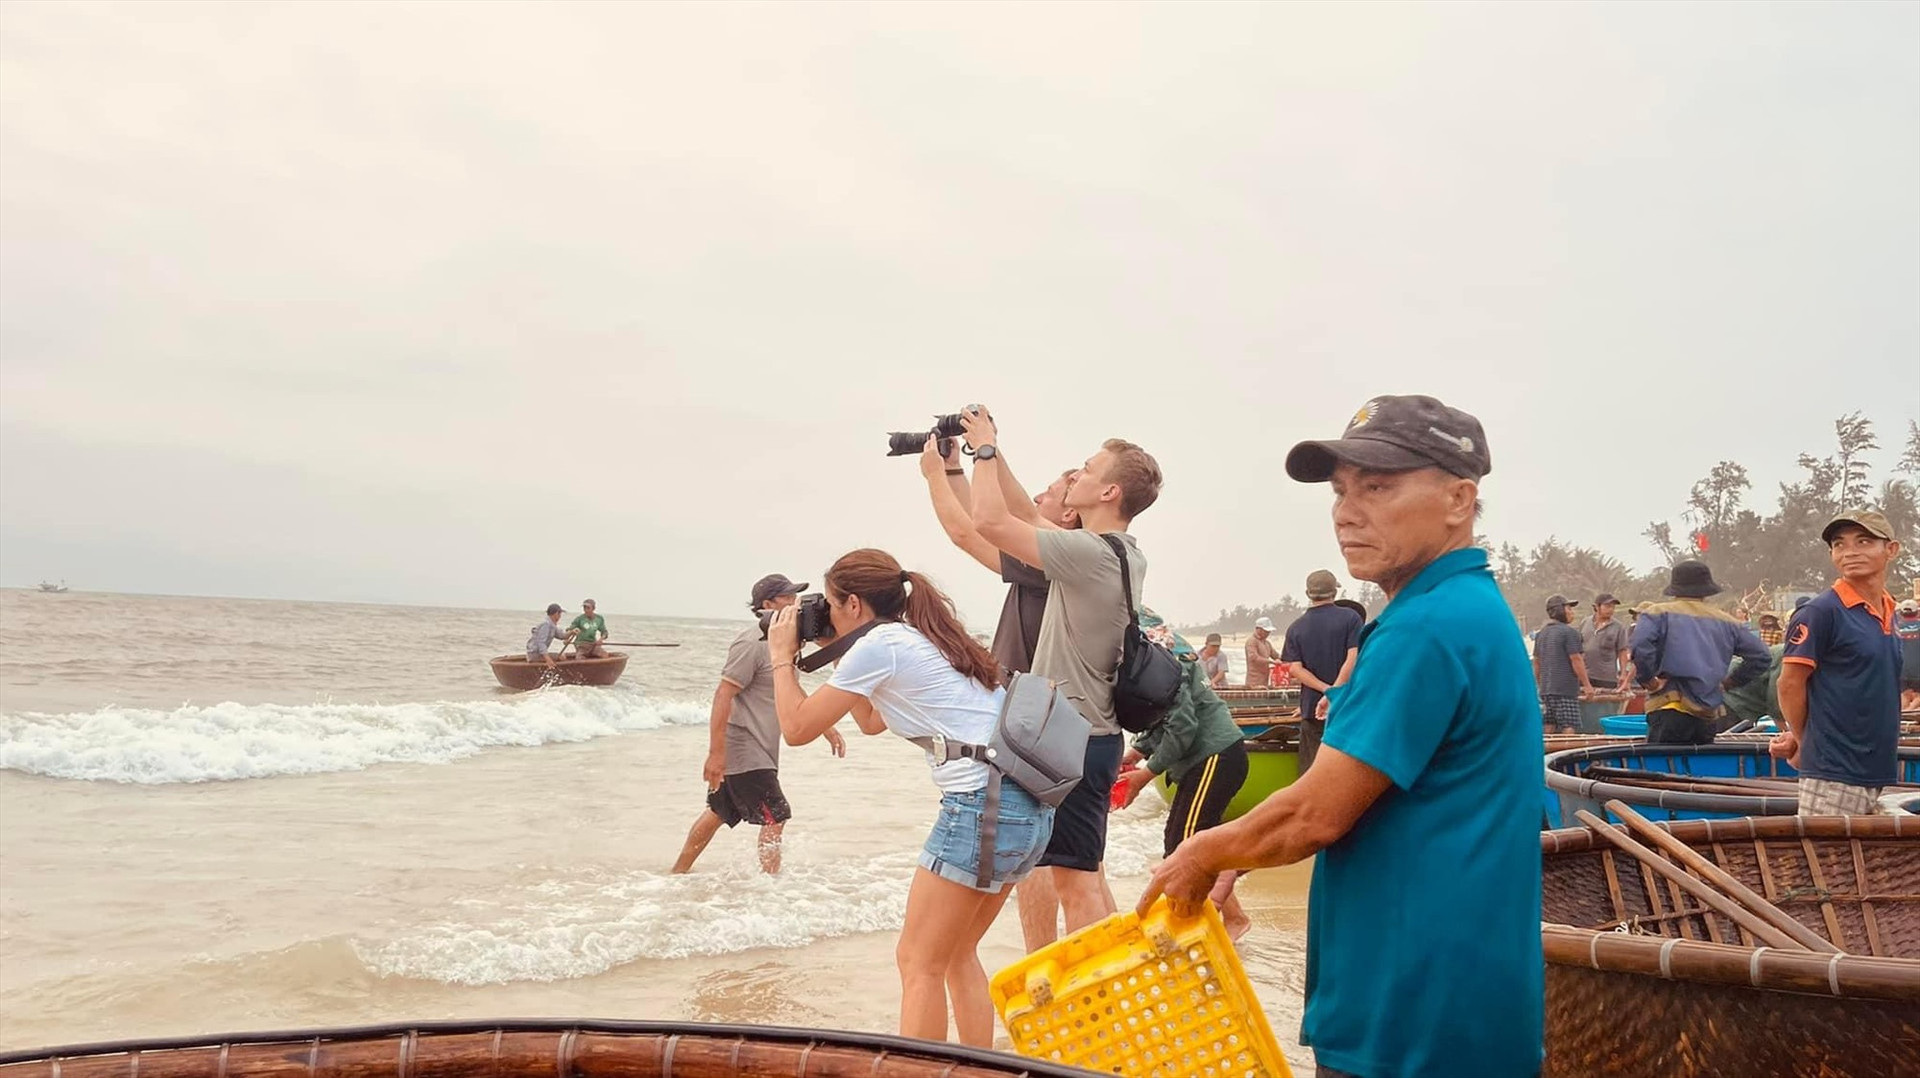 Du lịch trải nghiệm được xem là xu hướng mới hiện nay. TRONG ẢNH: Du khách quốc tế thích thú khi chứng kiến những chiếc thúng chai chở hải sản vào chợ cá Tam Tiến (Núi Thành). Ảnh: H.Q